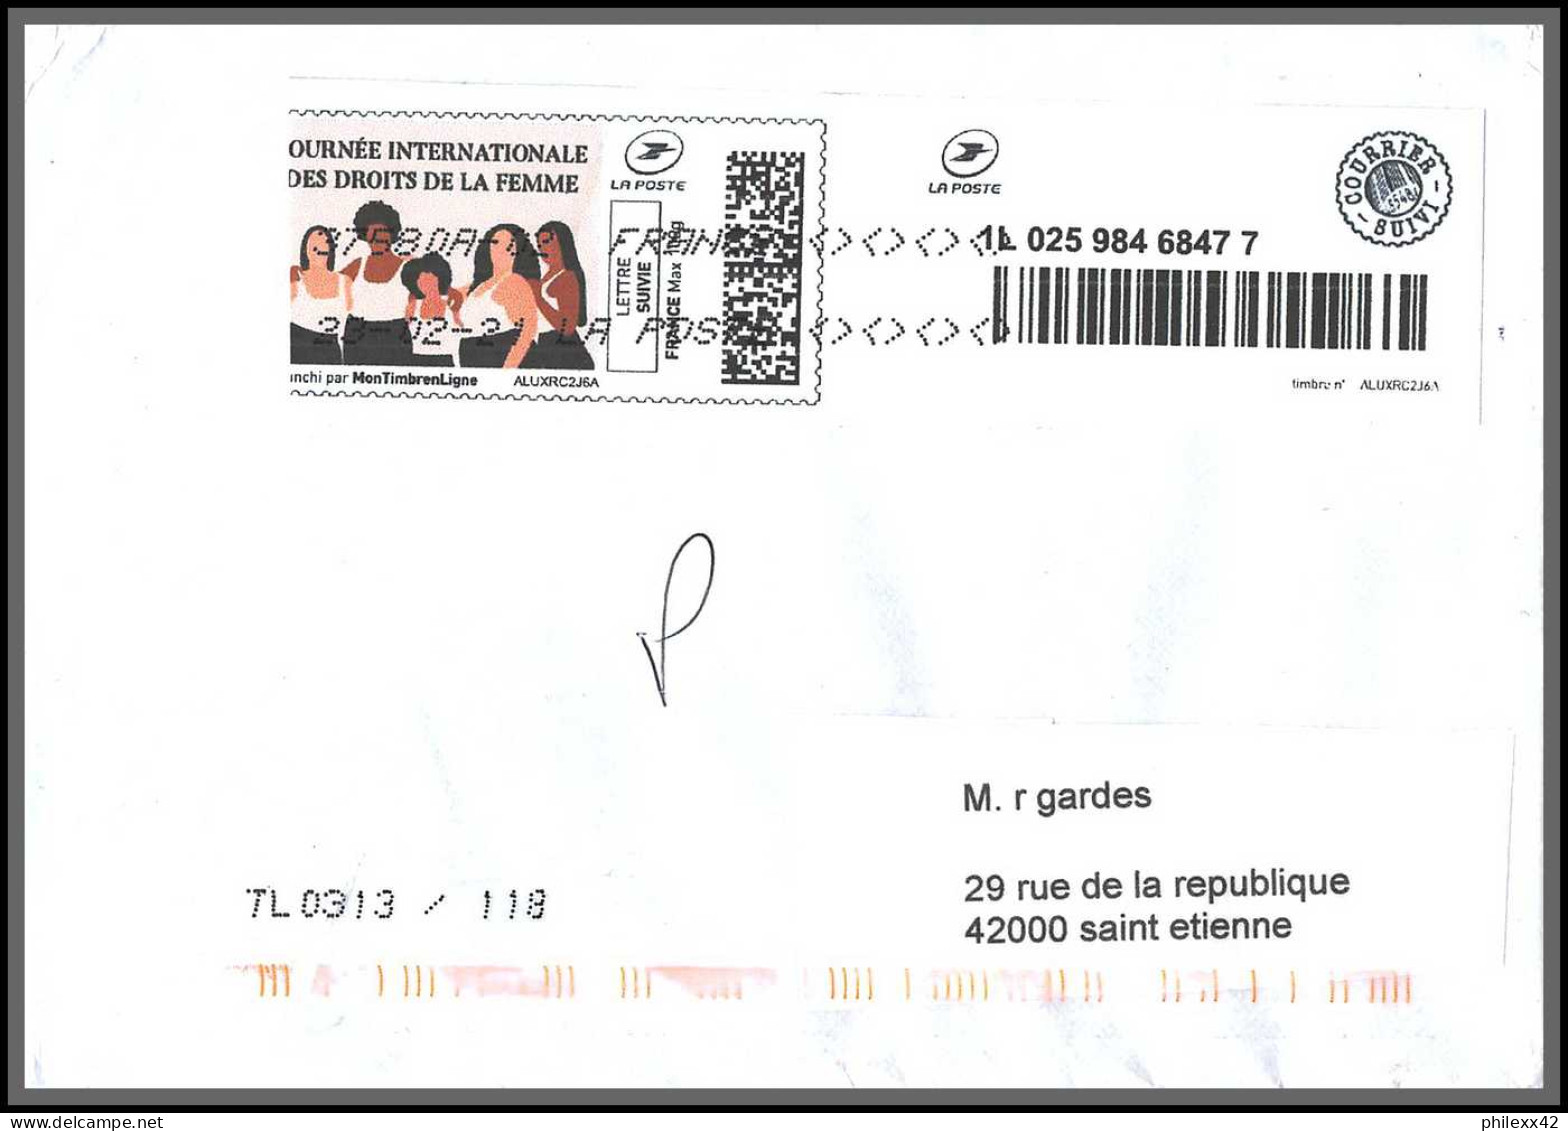 95869 - lot de 15 courriers lettres enveloppes de l'année 2021 divers affranchissements en EUROS